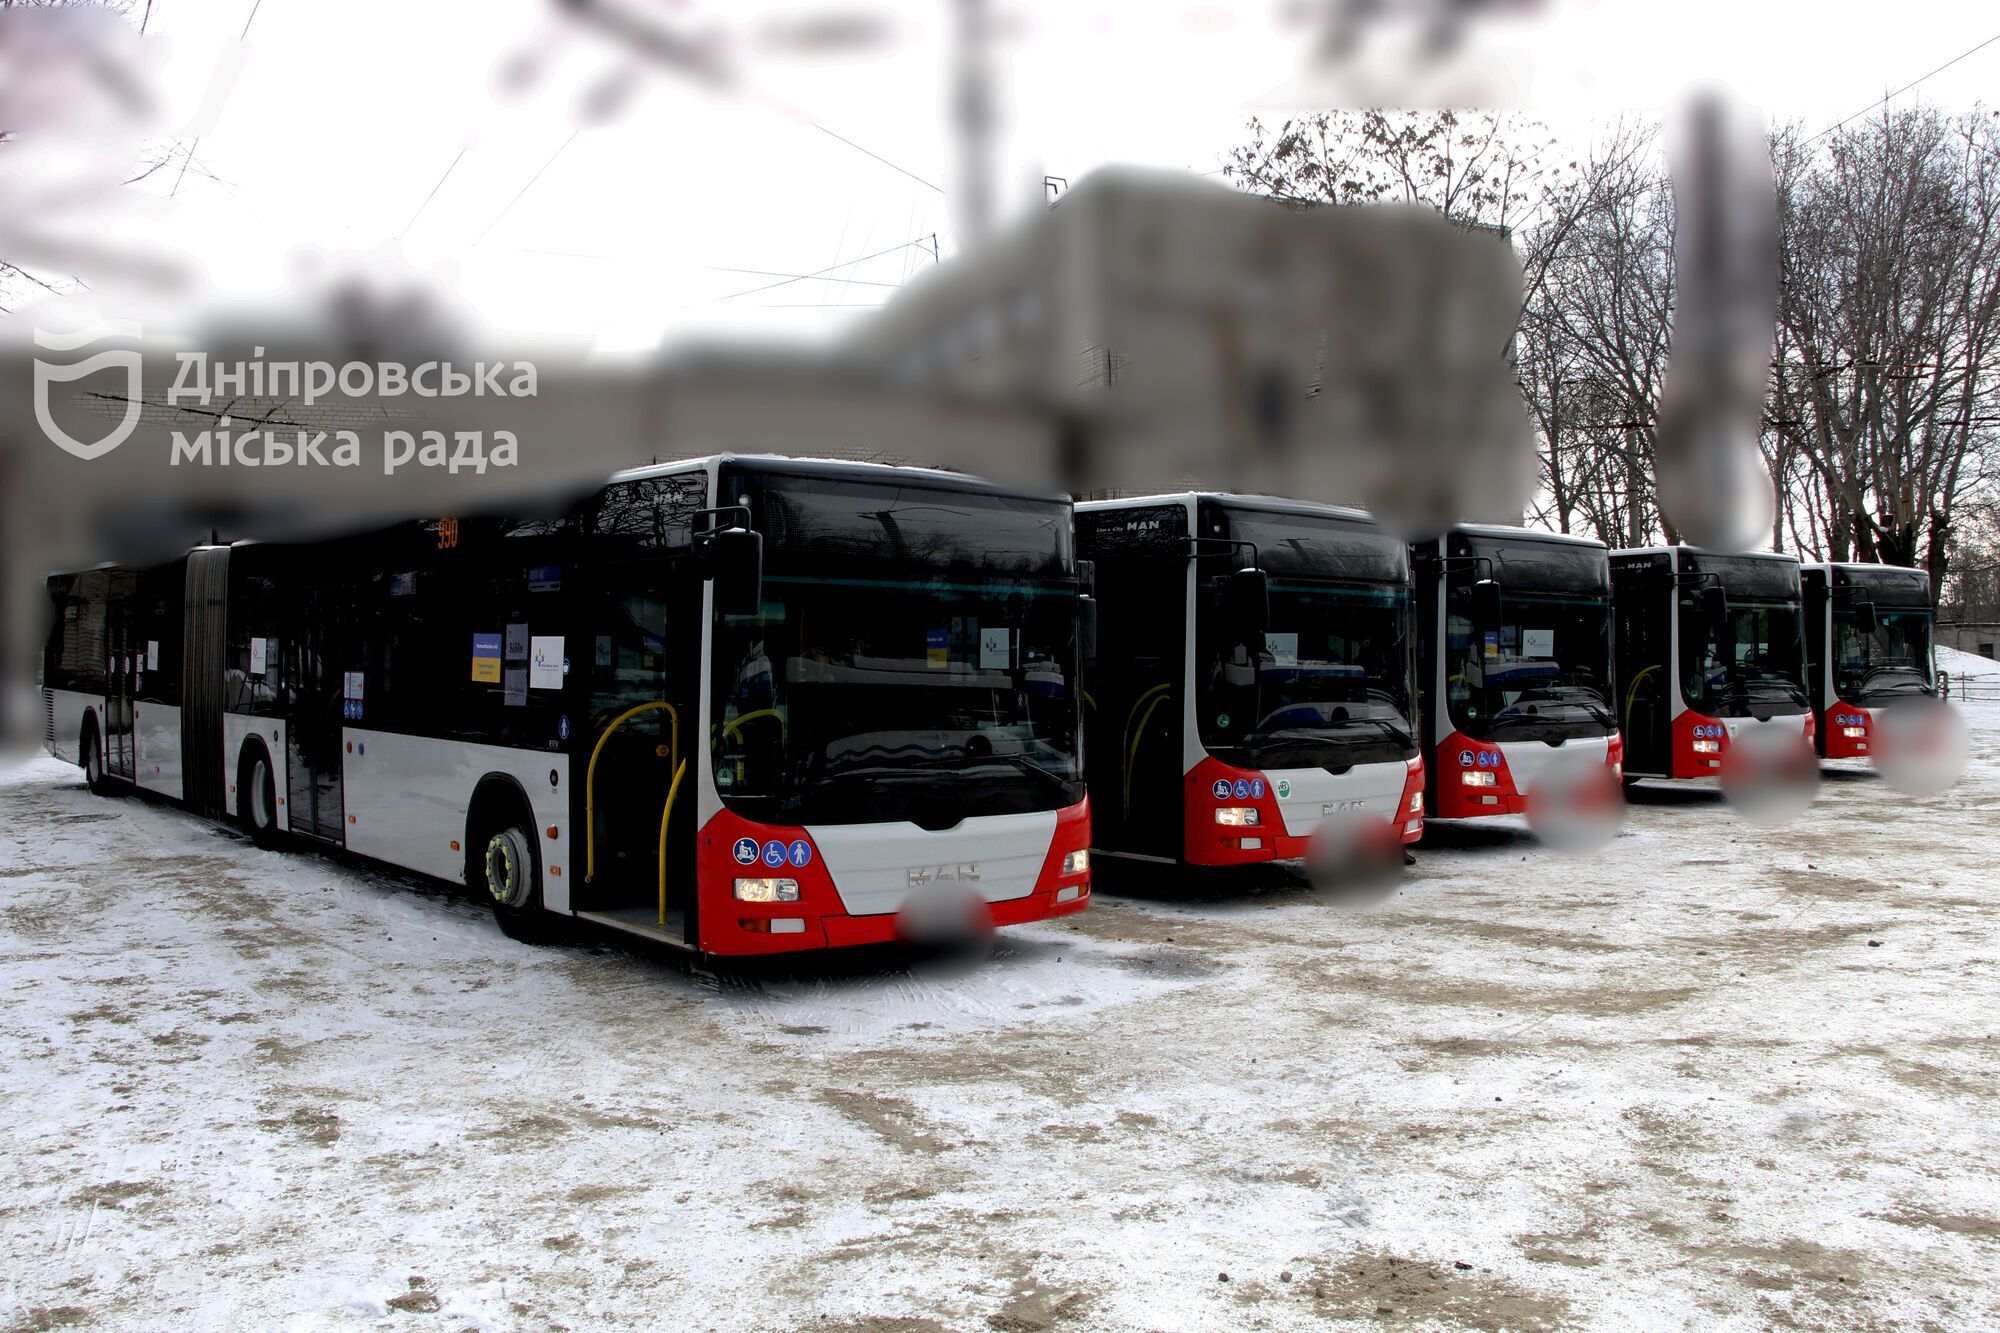 Дніпро отримав від Кельна 5 автобусів: Філатов розповів, коли вони вийдуть на маршрути